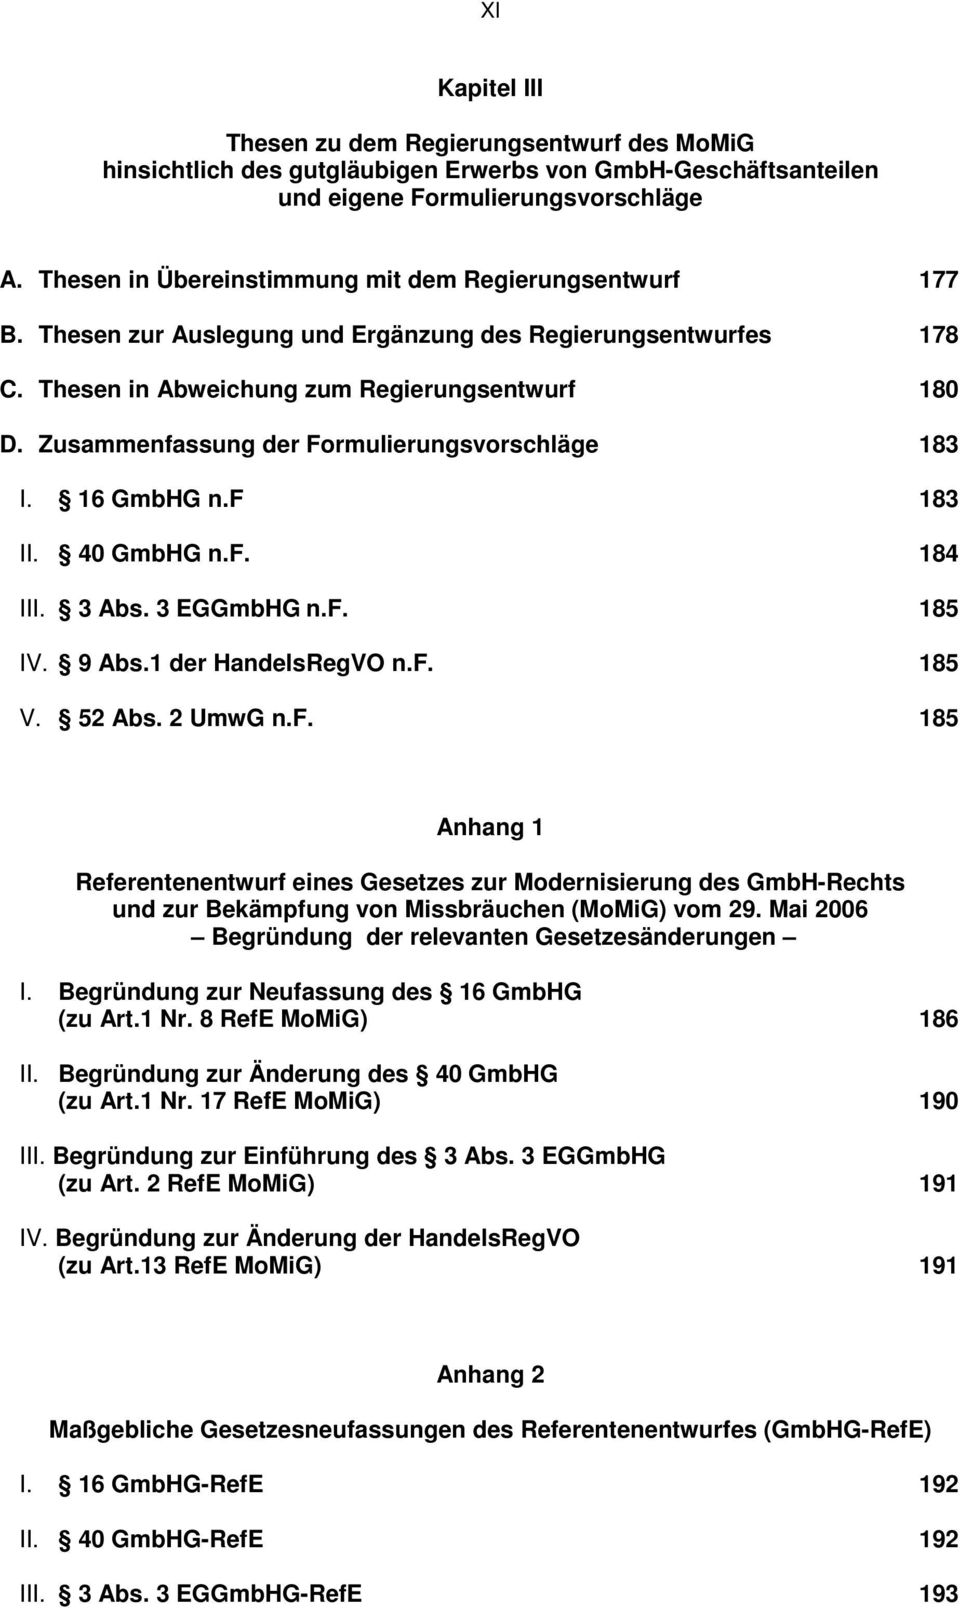 Zusammenfassung der Formulierungsvorschläge 183 I. 16 GmbHG n.f 183 II. 40 GmbHG n.f. 184 III. 3 Abs. 3 EGGmbHG n.f. 185 IV. 9 Abs.1 der HandelsRegVO n.f. 185 V. 52 Abs. 2 UmwG n.f. 185 Anhang 1 Referentenentwurf eines Gesetzes zur Modernisierung des GmbH-Rechts und zur Bekämpfung von Missbräuchen (MoMiG) vom 29.